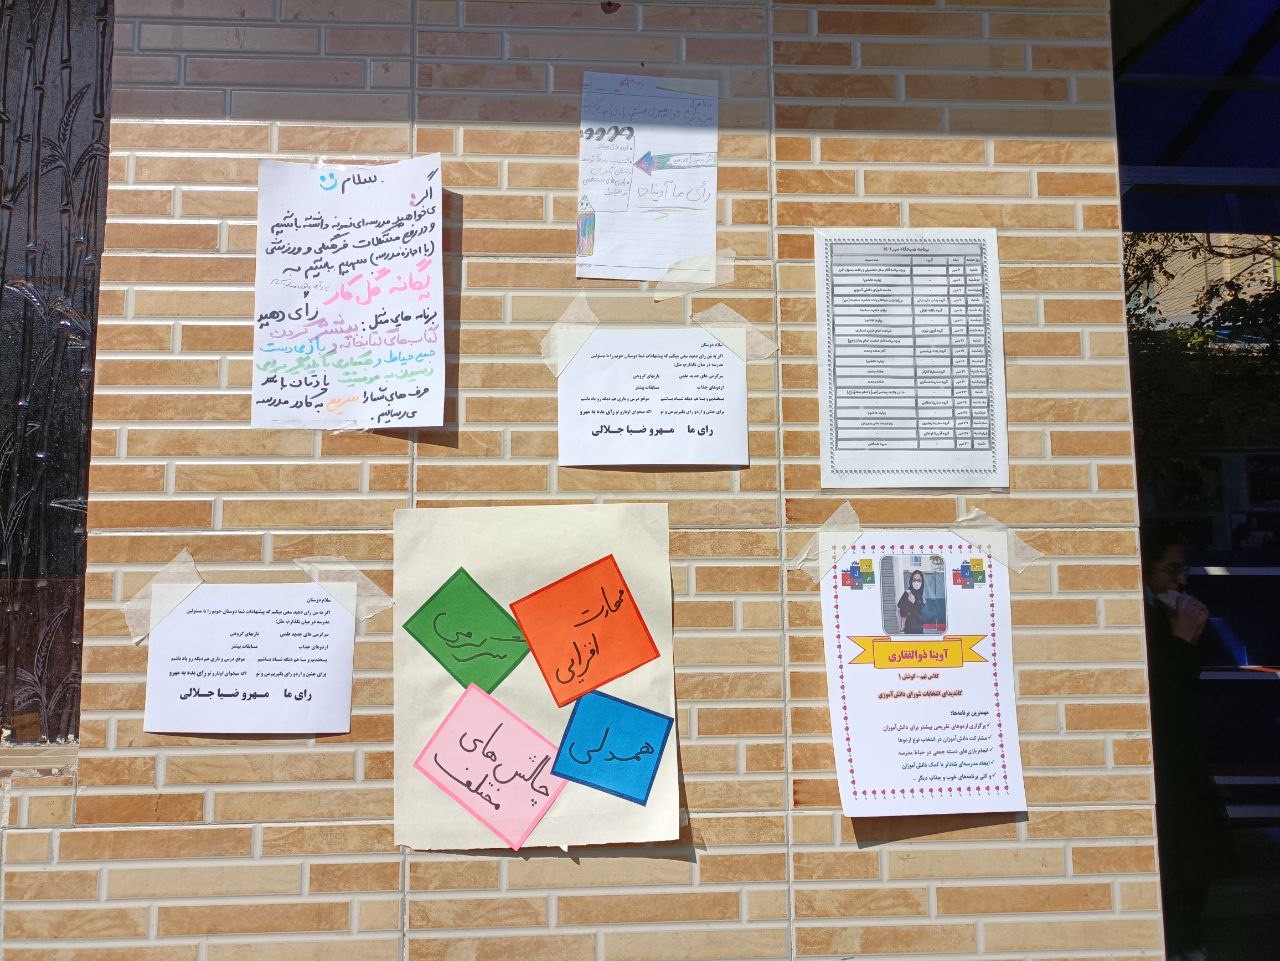 انتخابات شورای دانش آموزی سلام سلیمه